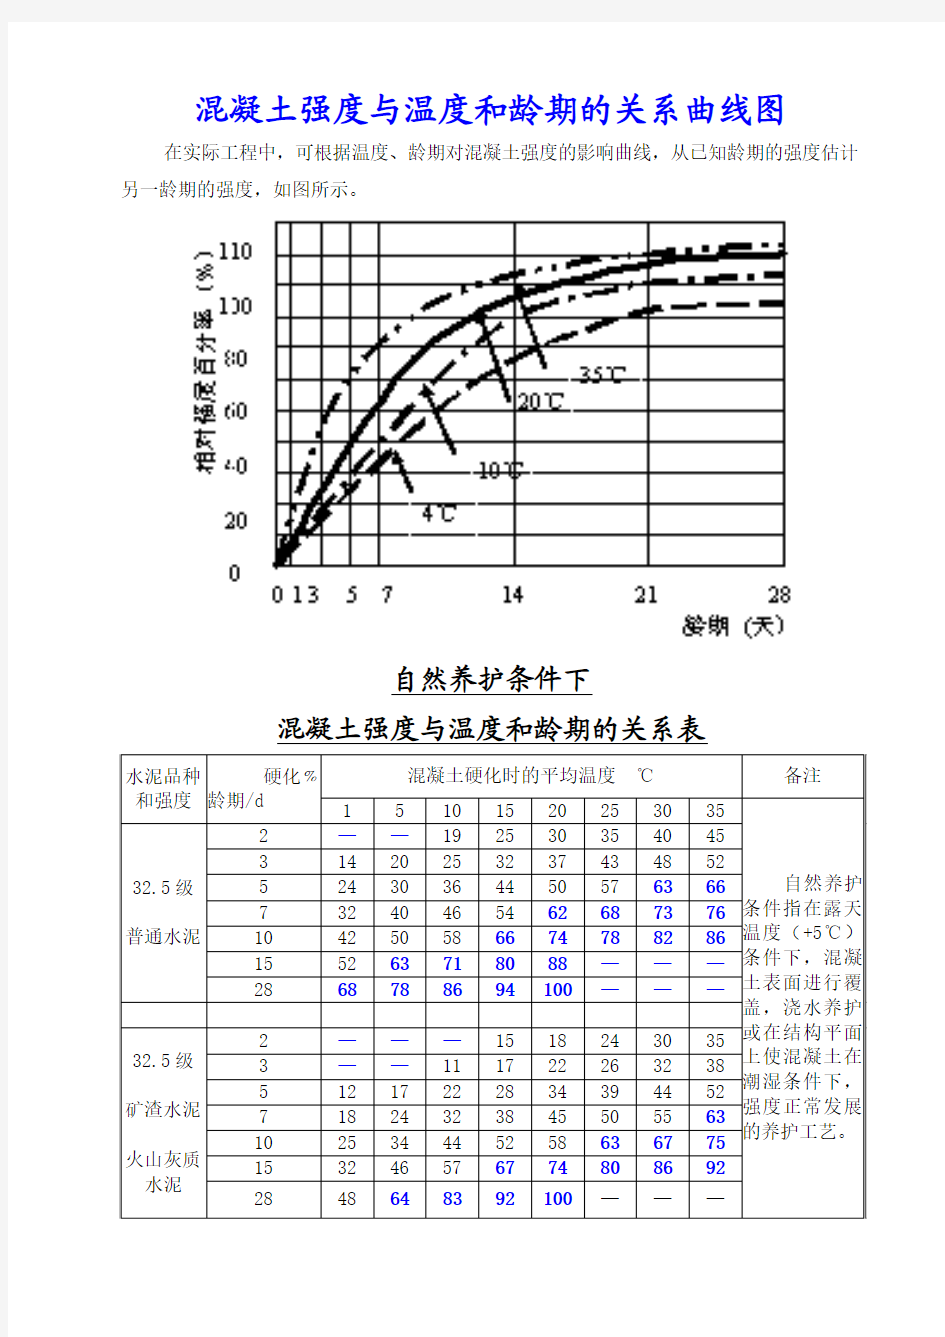 混凝土强度与温度和龄期的关系曲线图